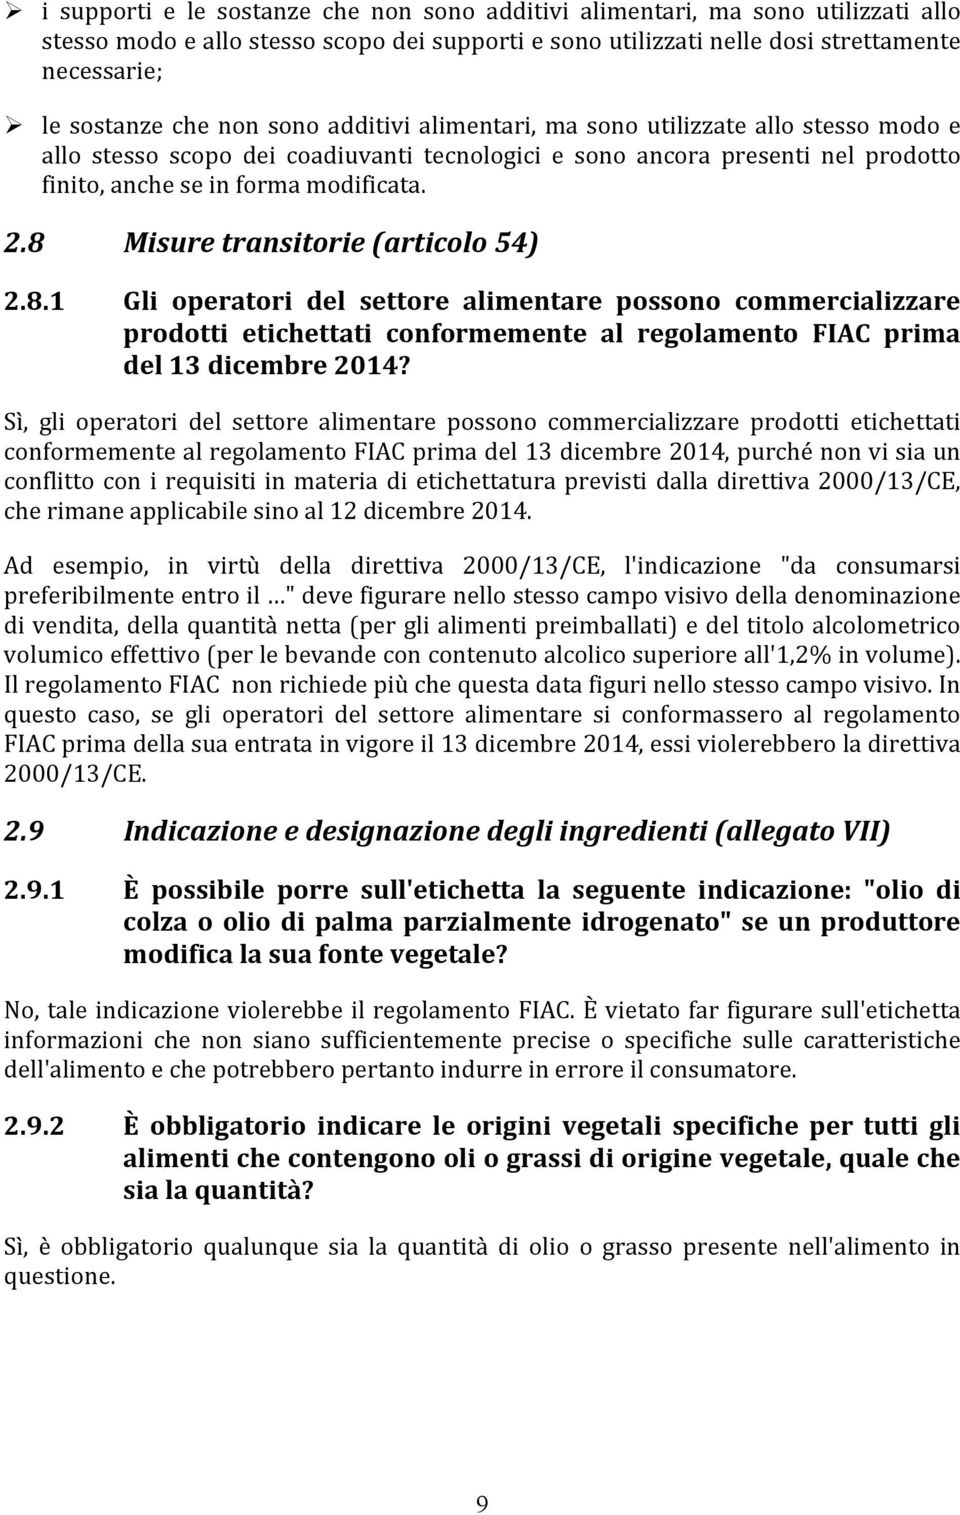 8 Misure transitorie (articolo 54) 2.8.1 Gli operatori del settore alimentare possono commercializzare prodotti etichettati conformemente al regolamento FIAC prima del 13 dicembre 2014?